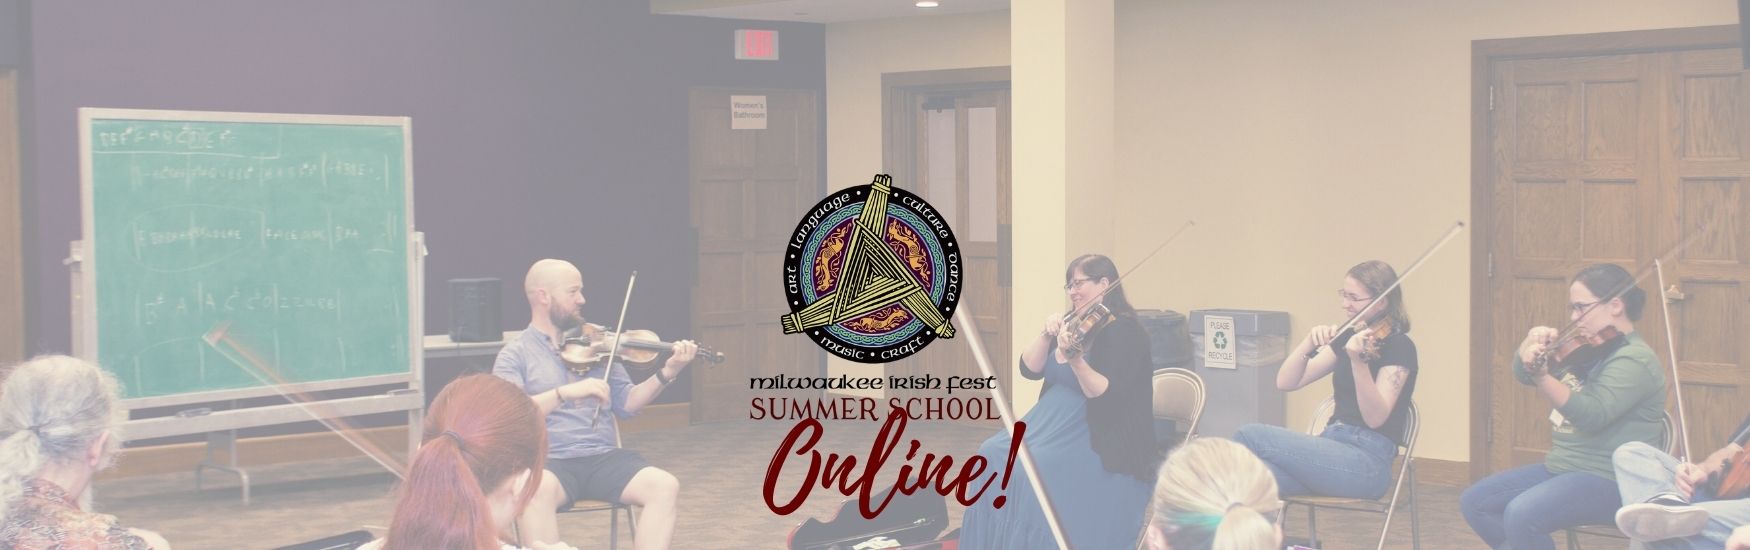 Milwaukee Irish Fest Summer School Online, August 14 - 19, 2021